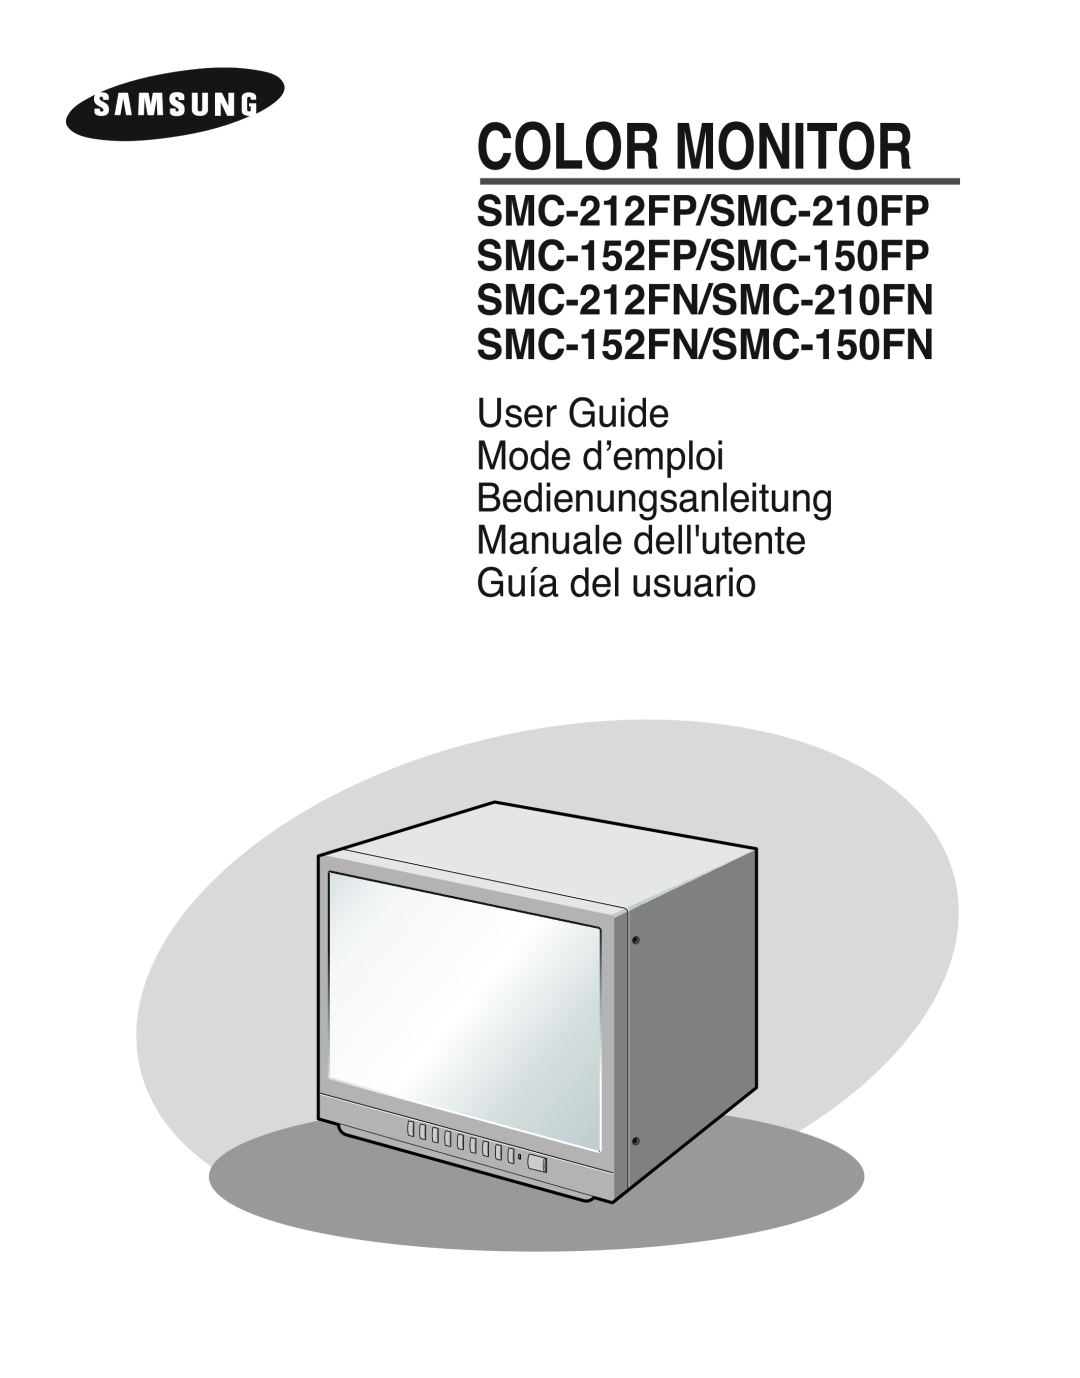 Samsung SMC-212FP, SMC-150FP, SMC-152FPV, SMC-210FPV manual Color Monitor 